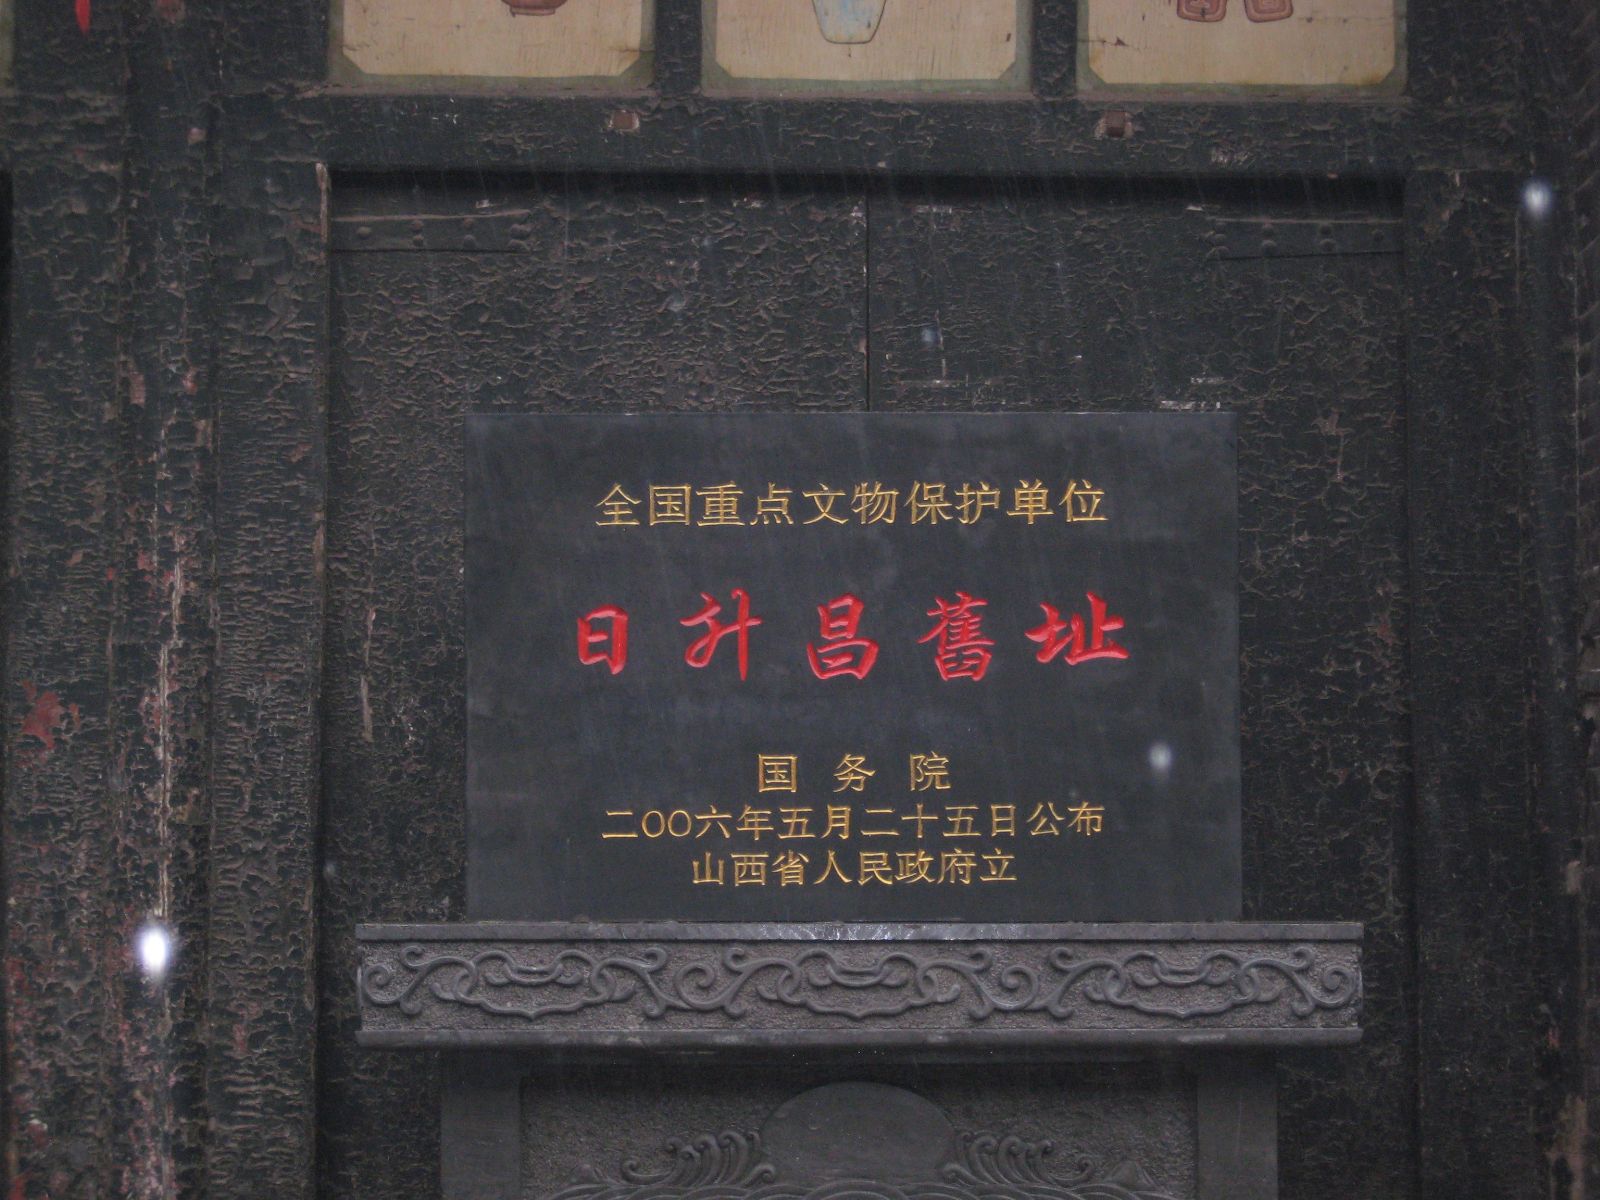 日升昌票號舊址闢為中國鏢局博物館